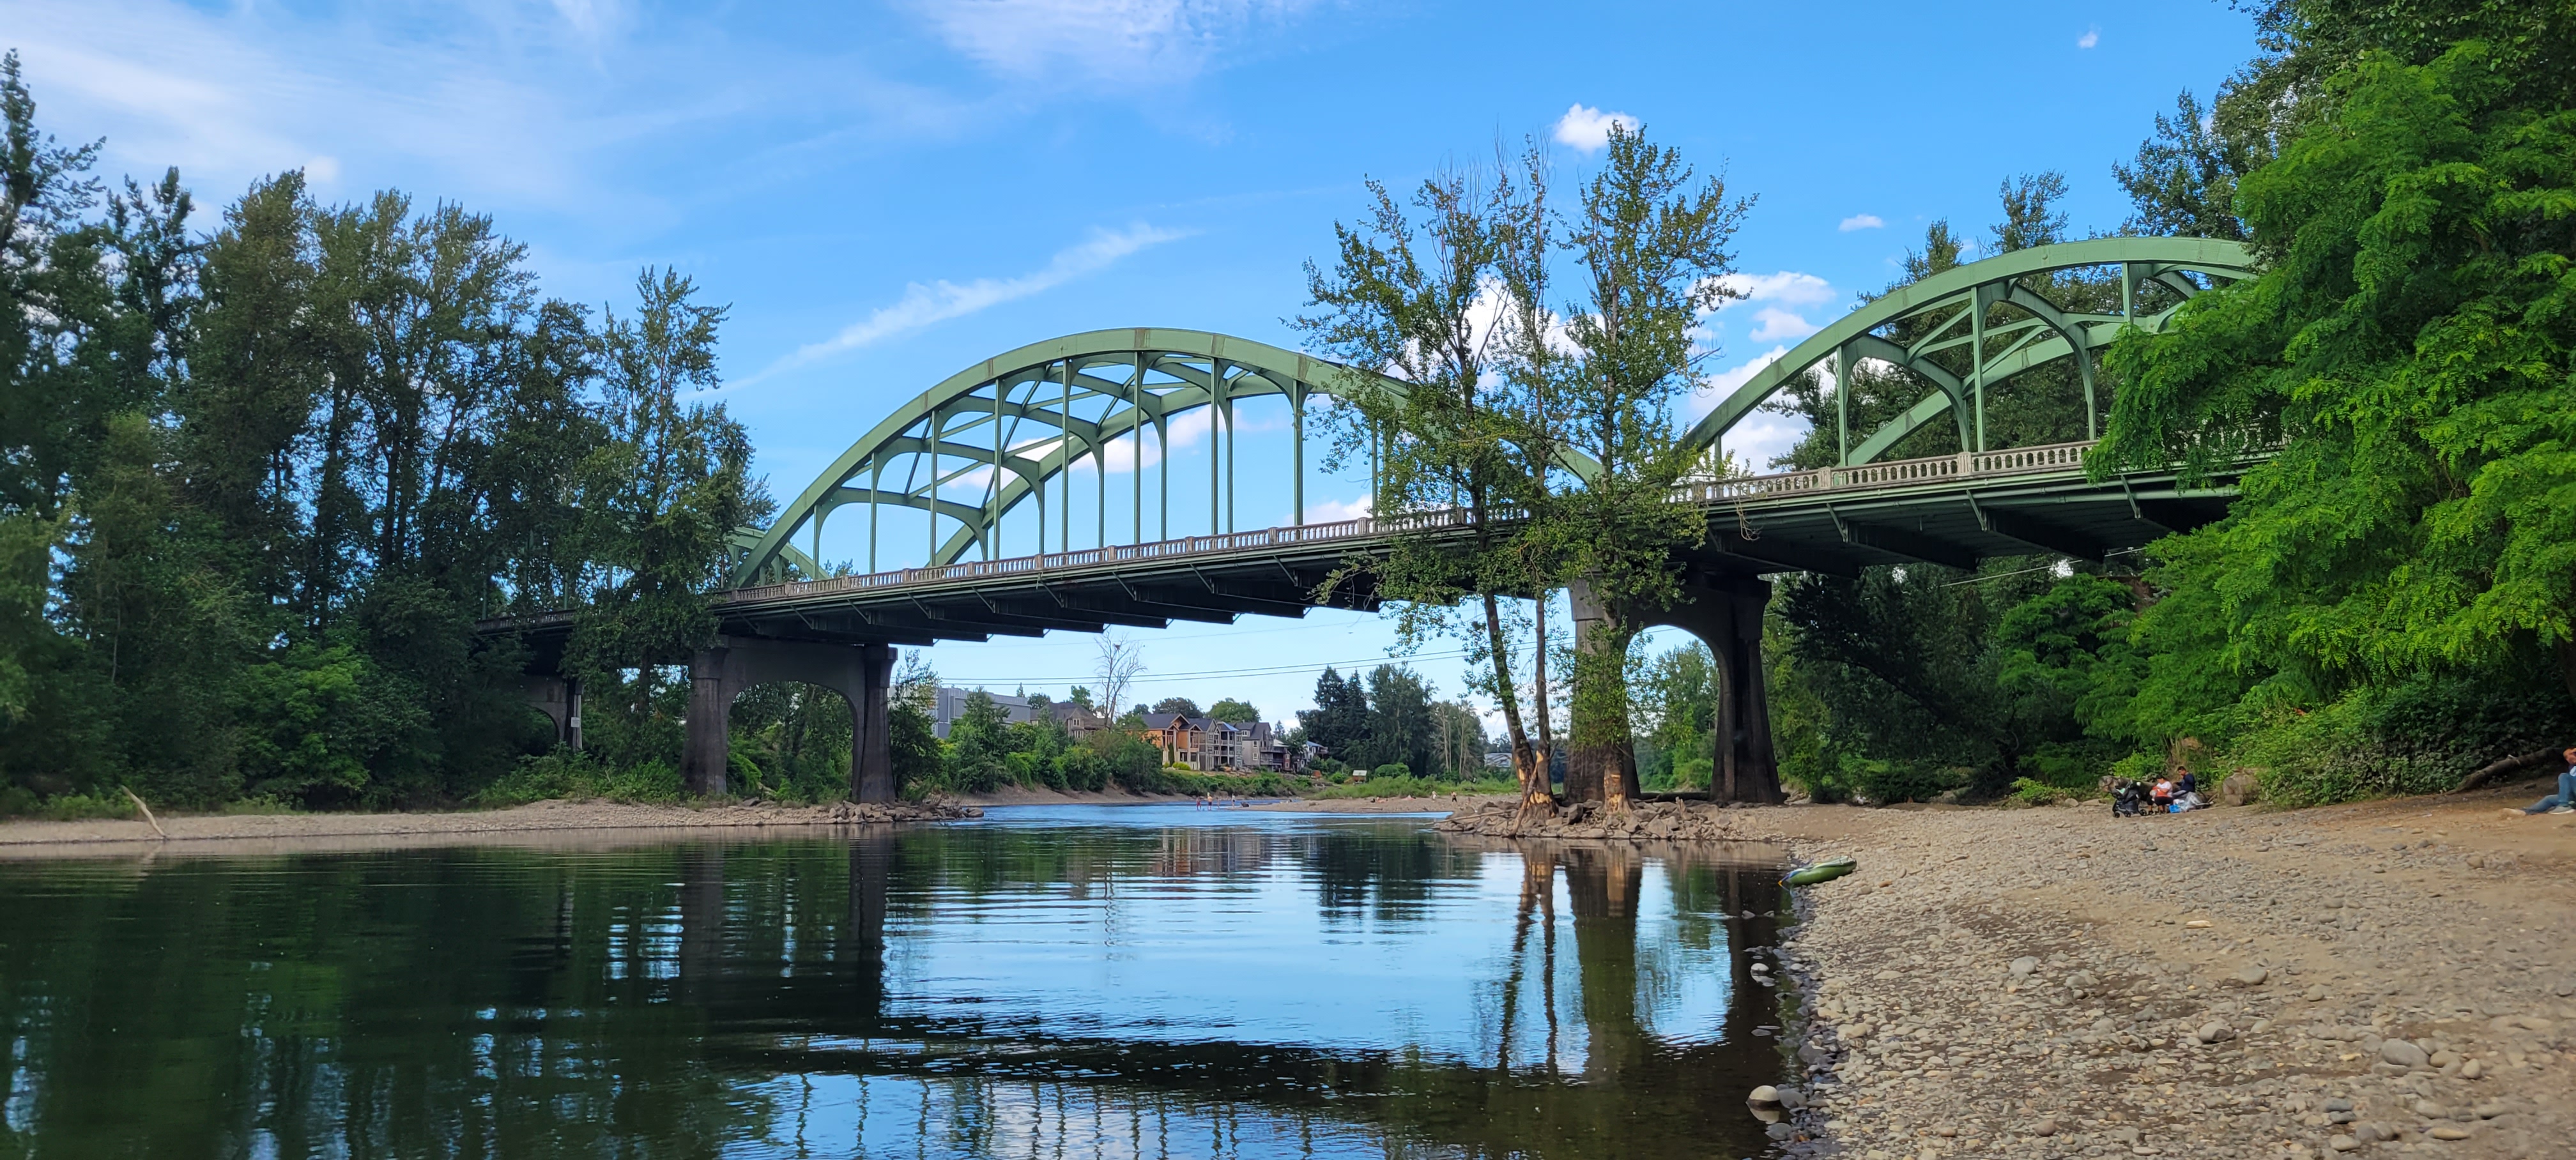 Clackamette Park Bridge, Oregon City, Oregon